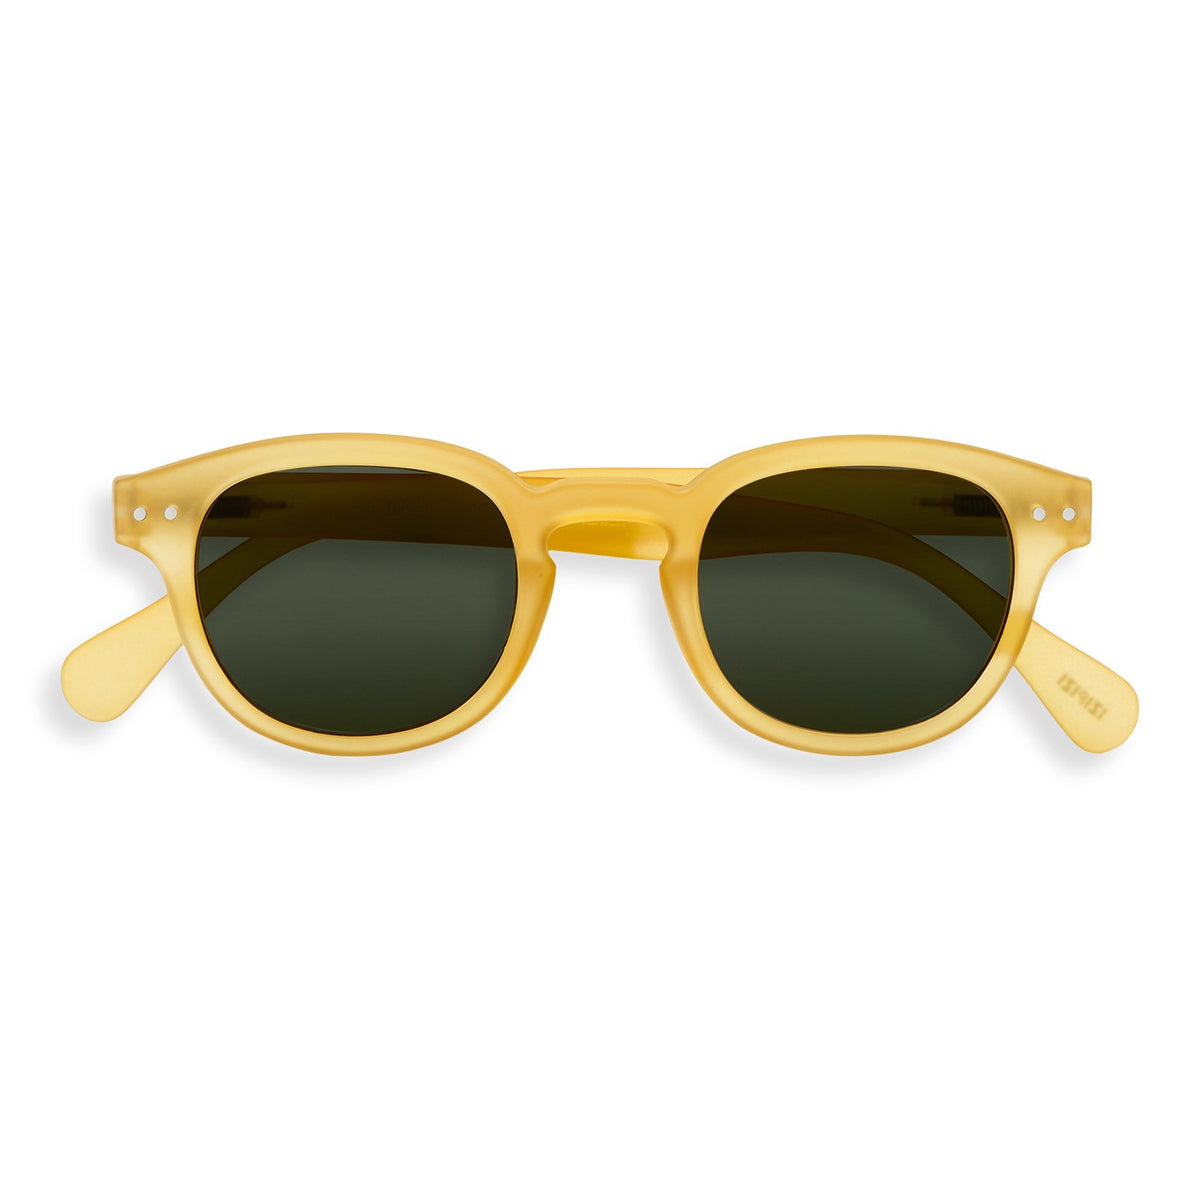 IZIPIZI, Sunglasses C Yellow Honey, Sunglasses,